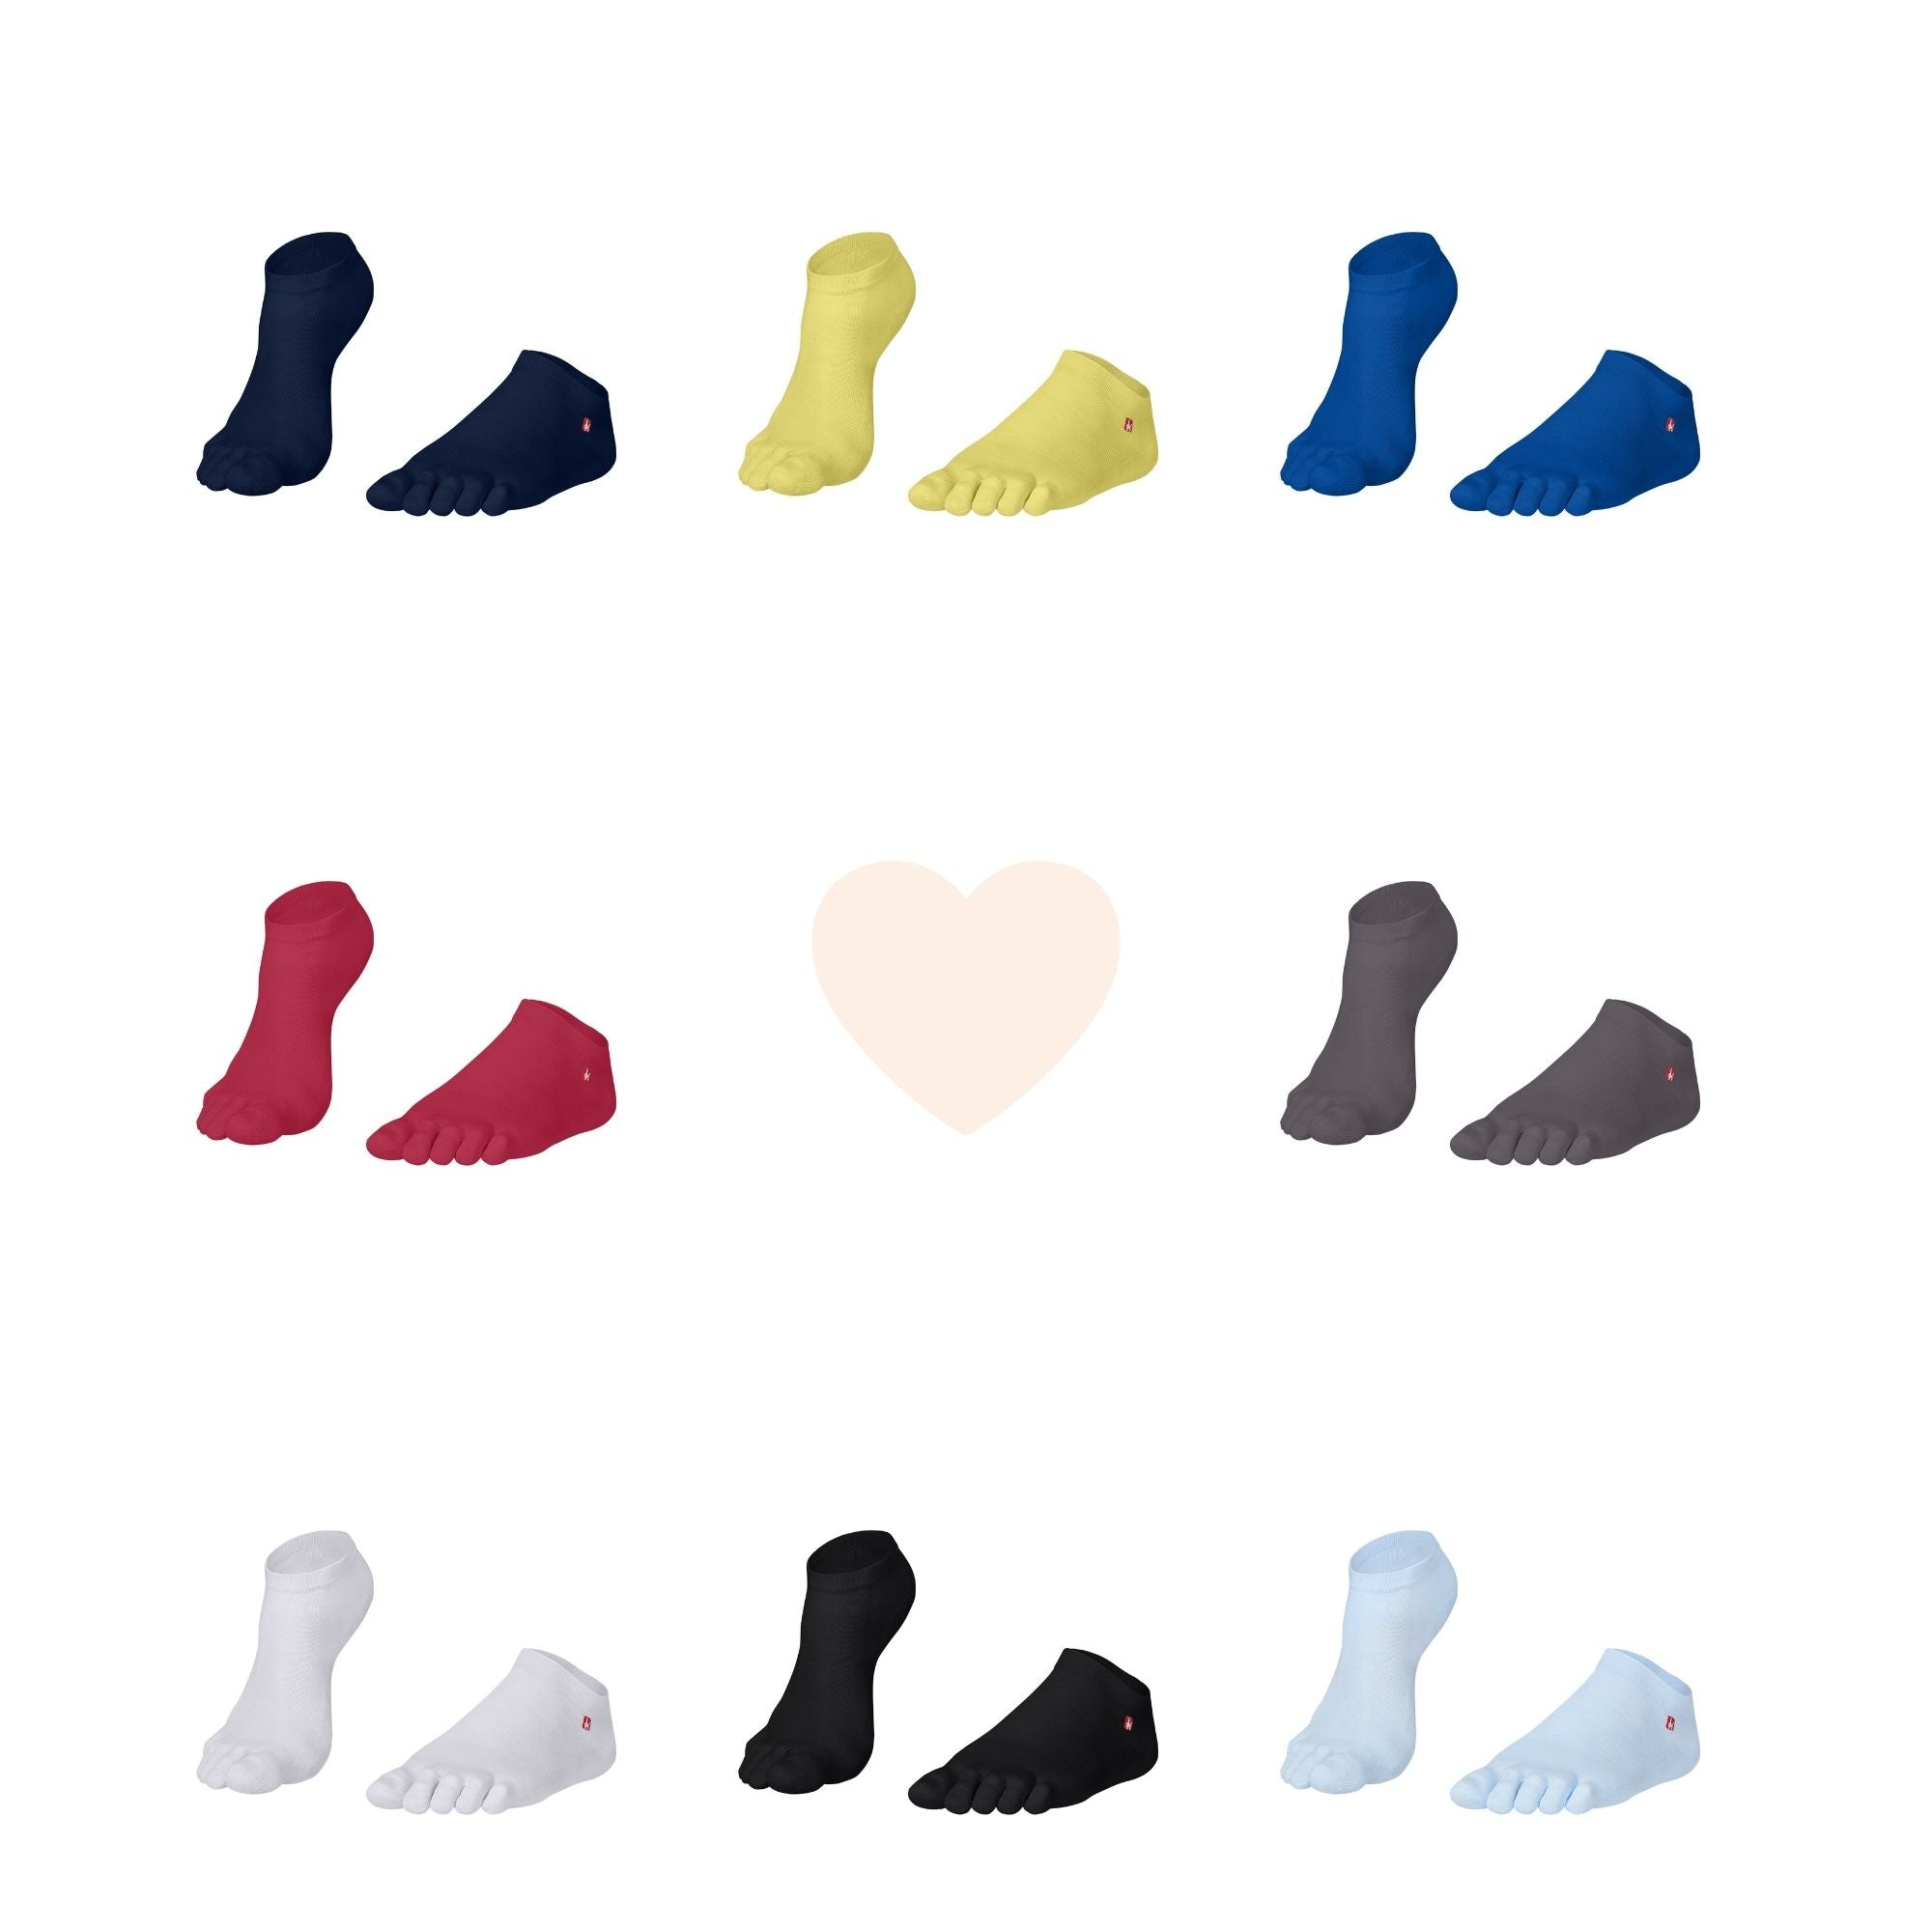 Prstne nogavice Coolmax Sneaker by Knitido Track & Trail ultralite fresh v številnih barvah